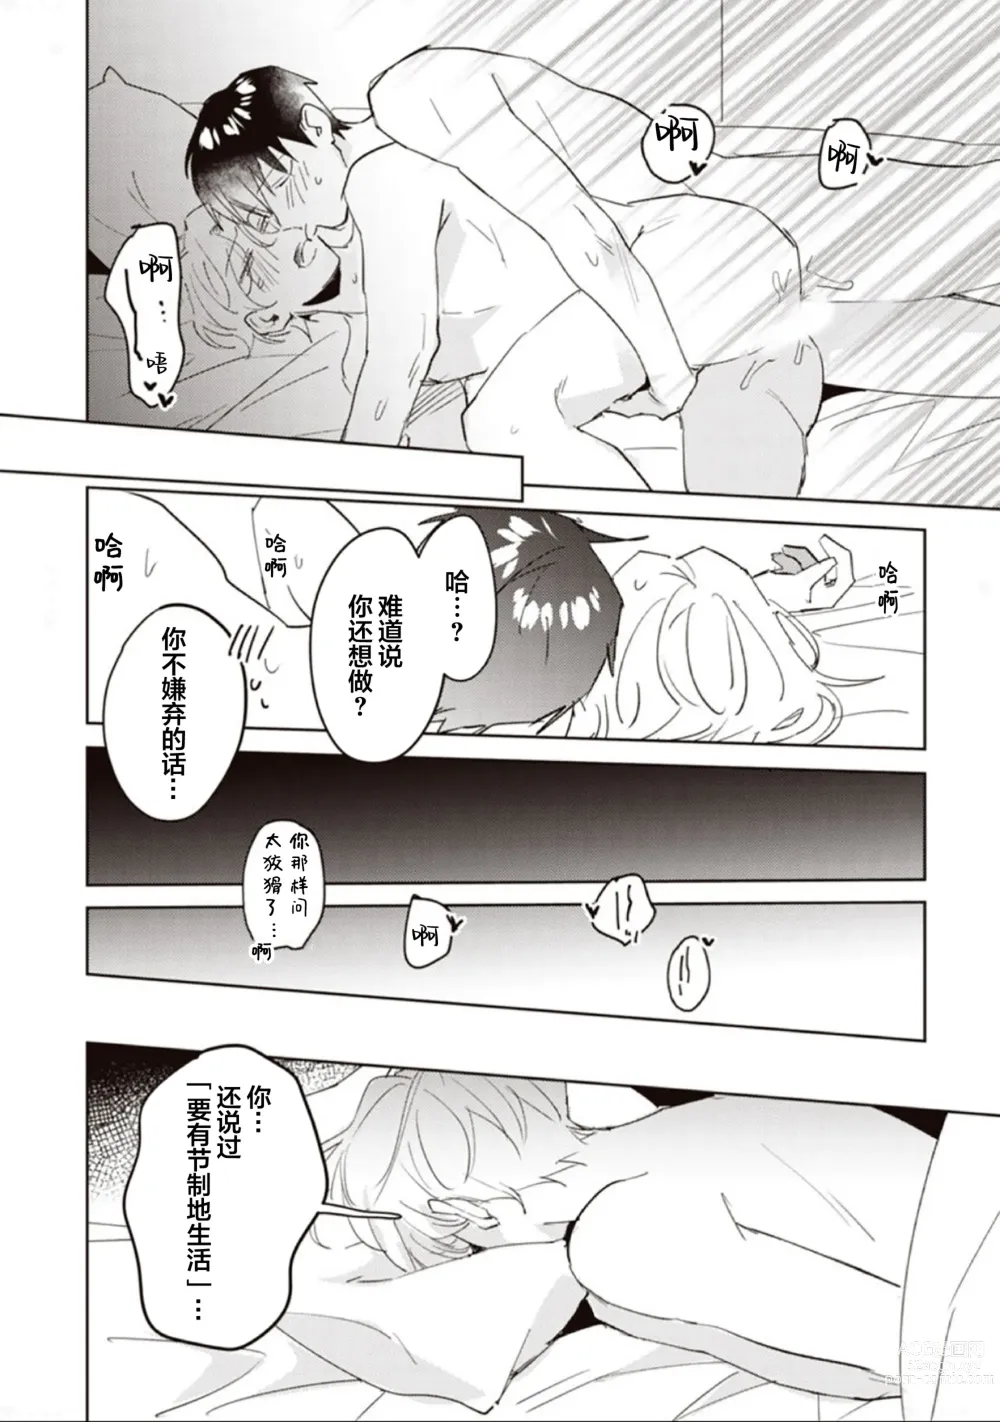 Page 163 of manga 虽然但是许诺终身的幼驯染是我的仆从!?